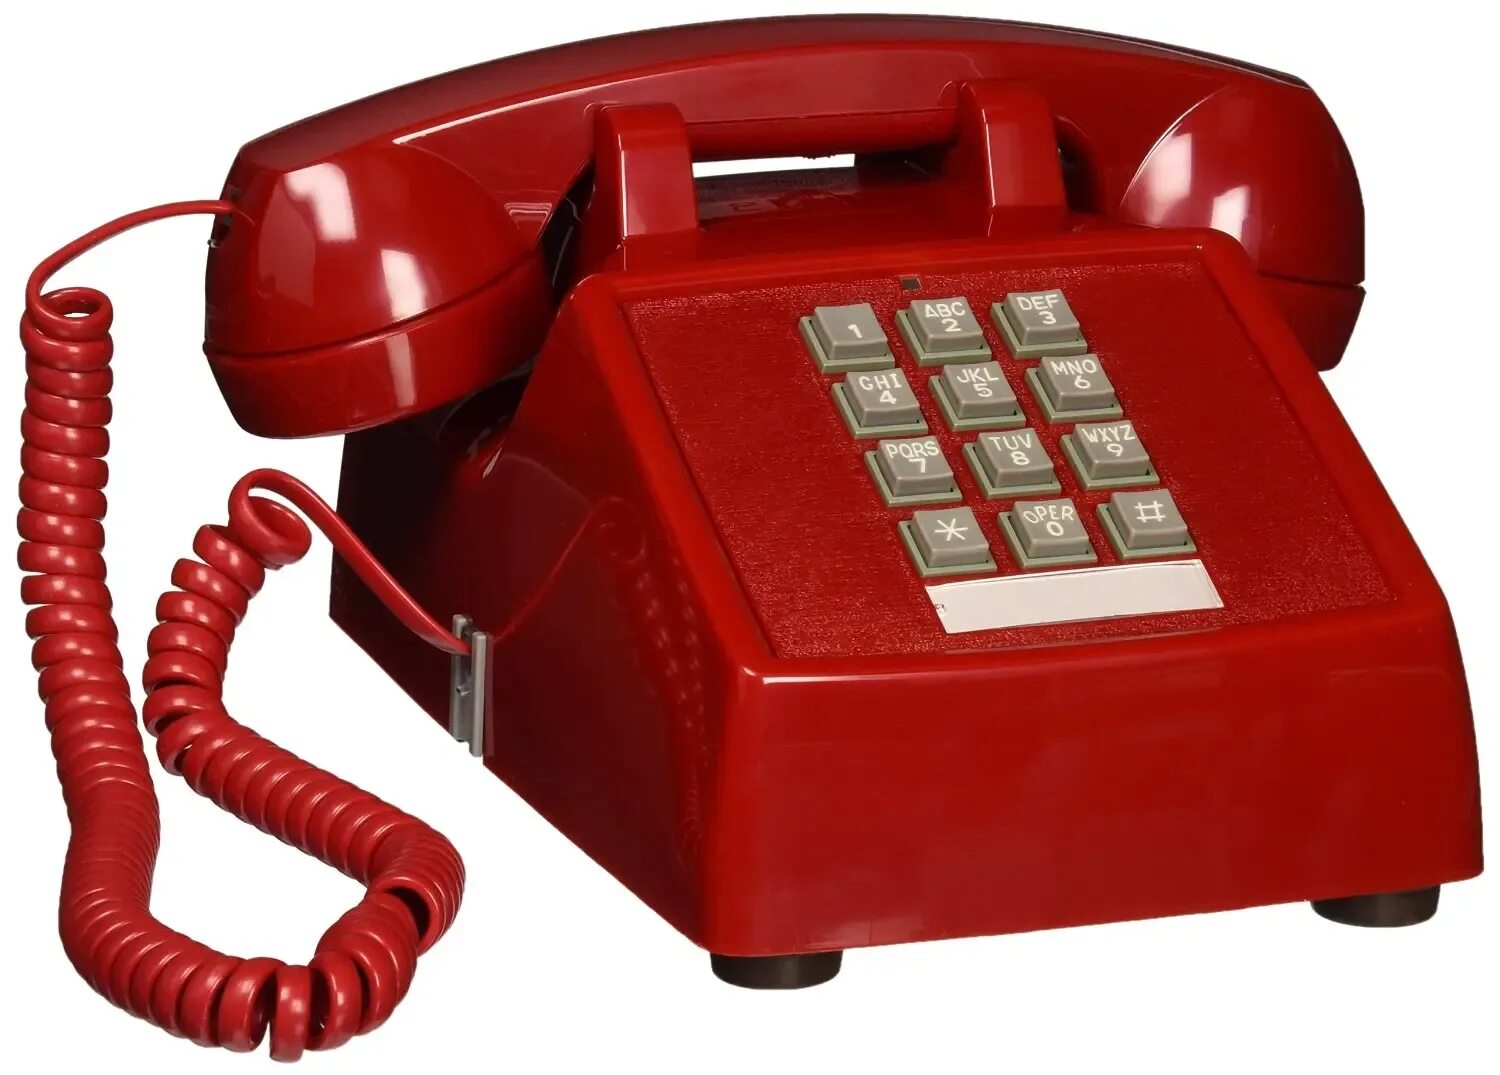 Картинки телефонных аппаратов. Телефонный аппарат. Стационарный телефон. Красный телефонный аппарат. Телефонная трубка.